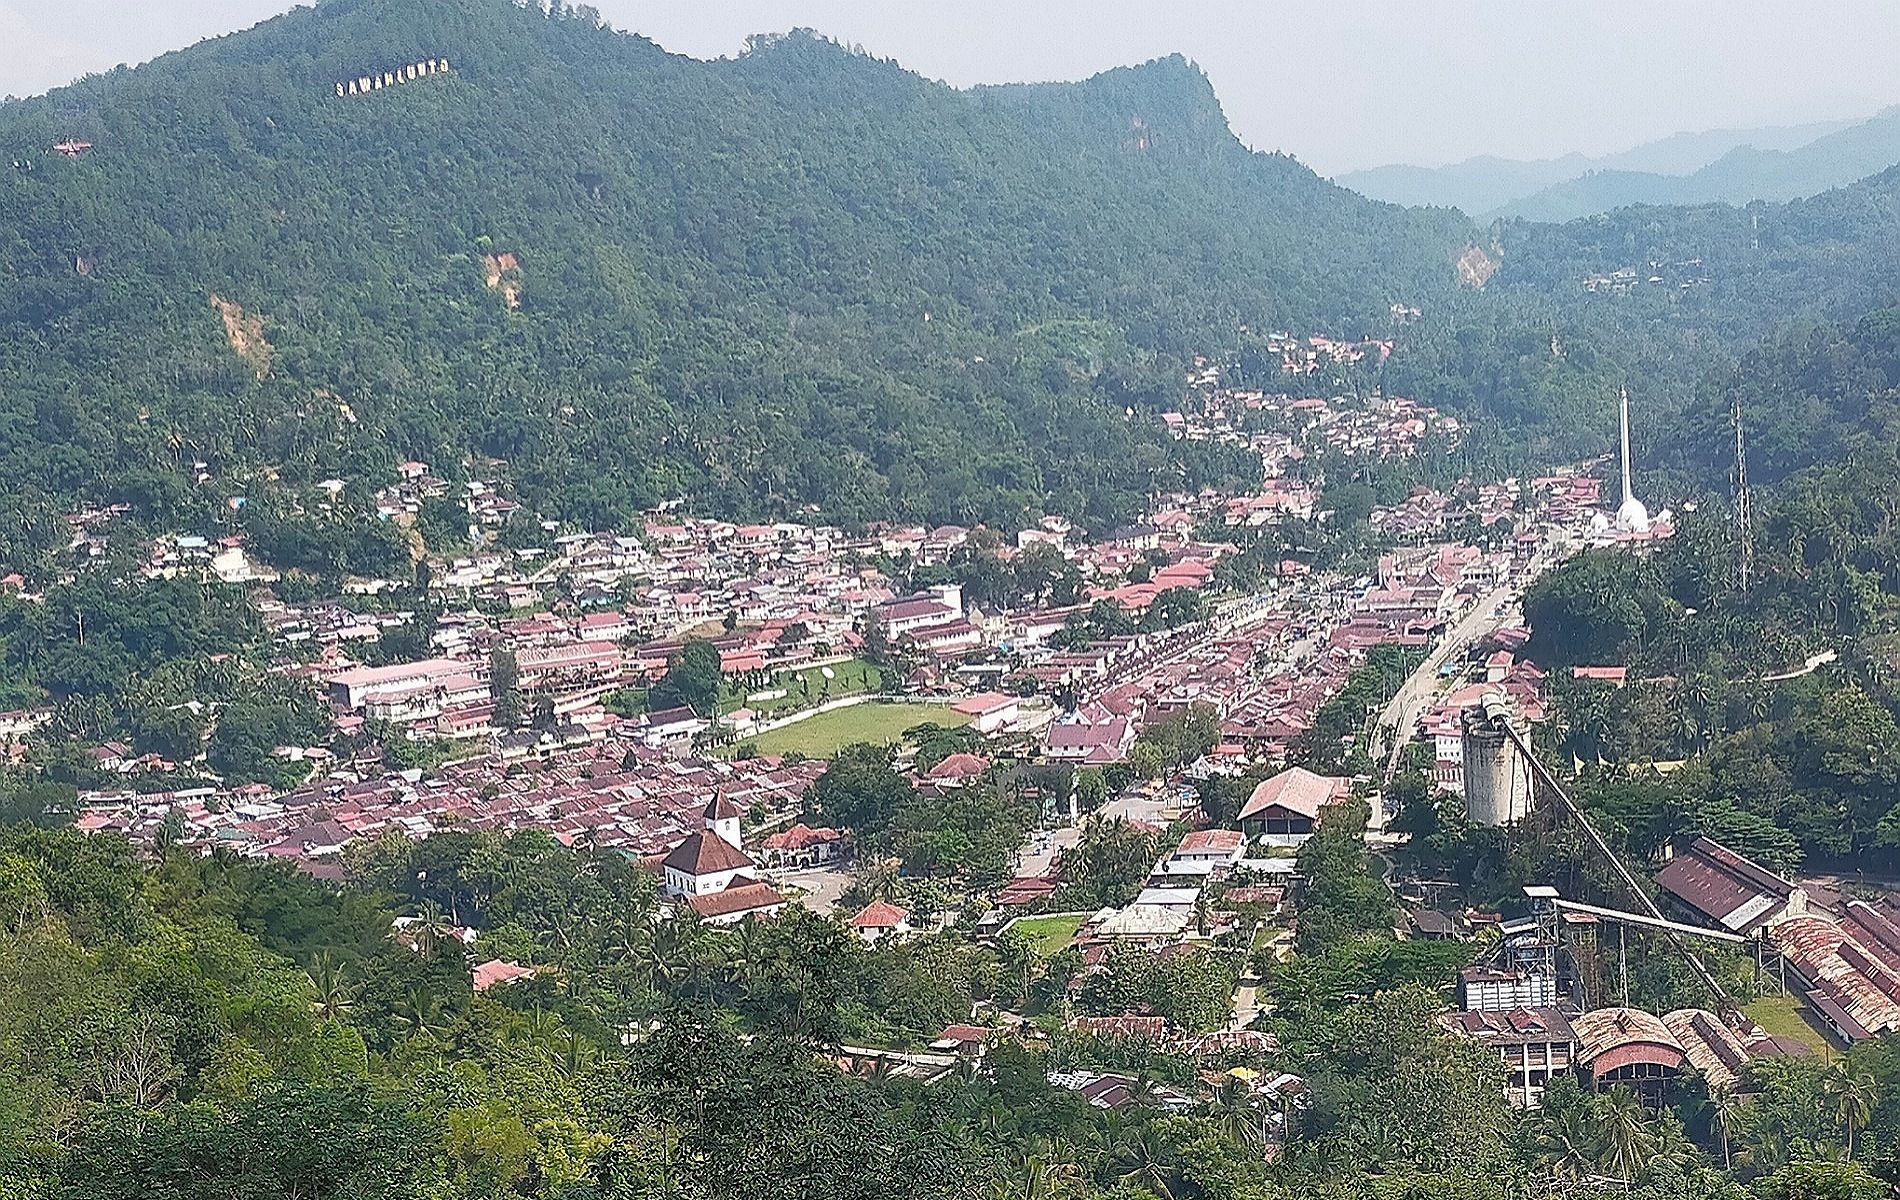 Kota lama Sawahlunto di ambil dari panorama Puncak Cemara 